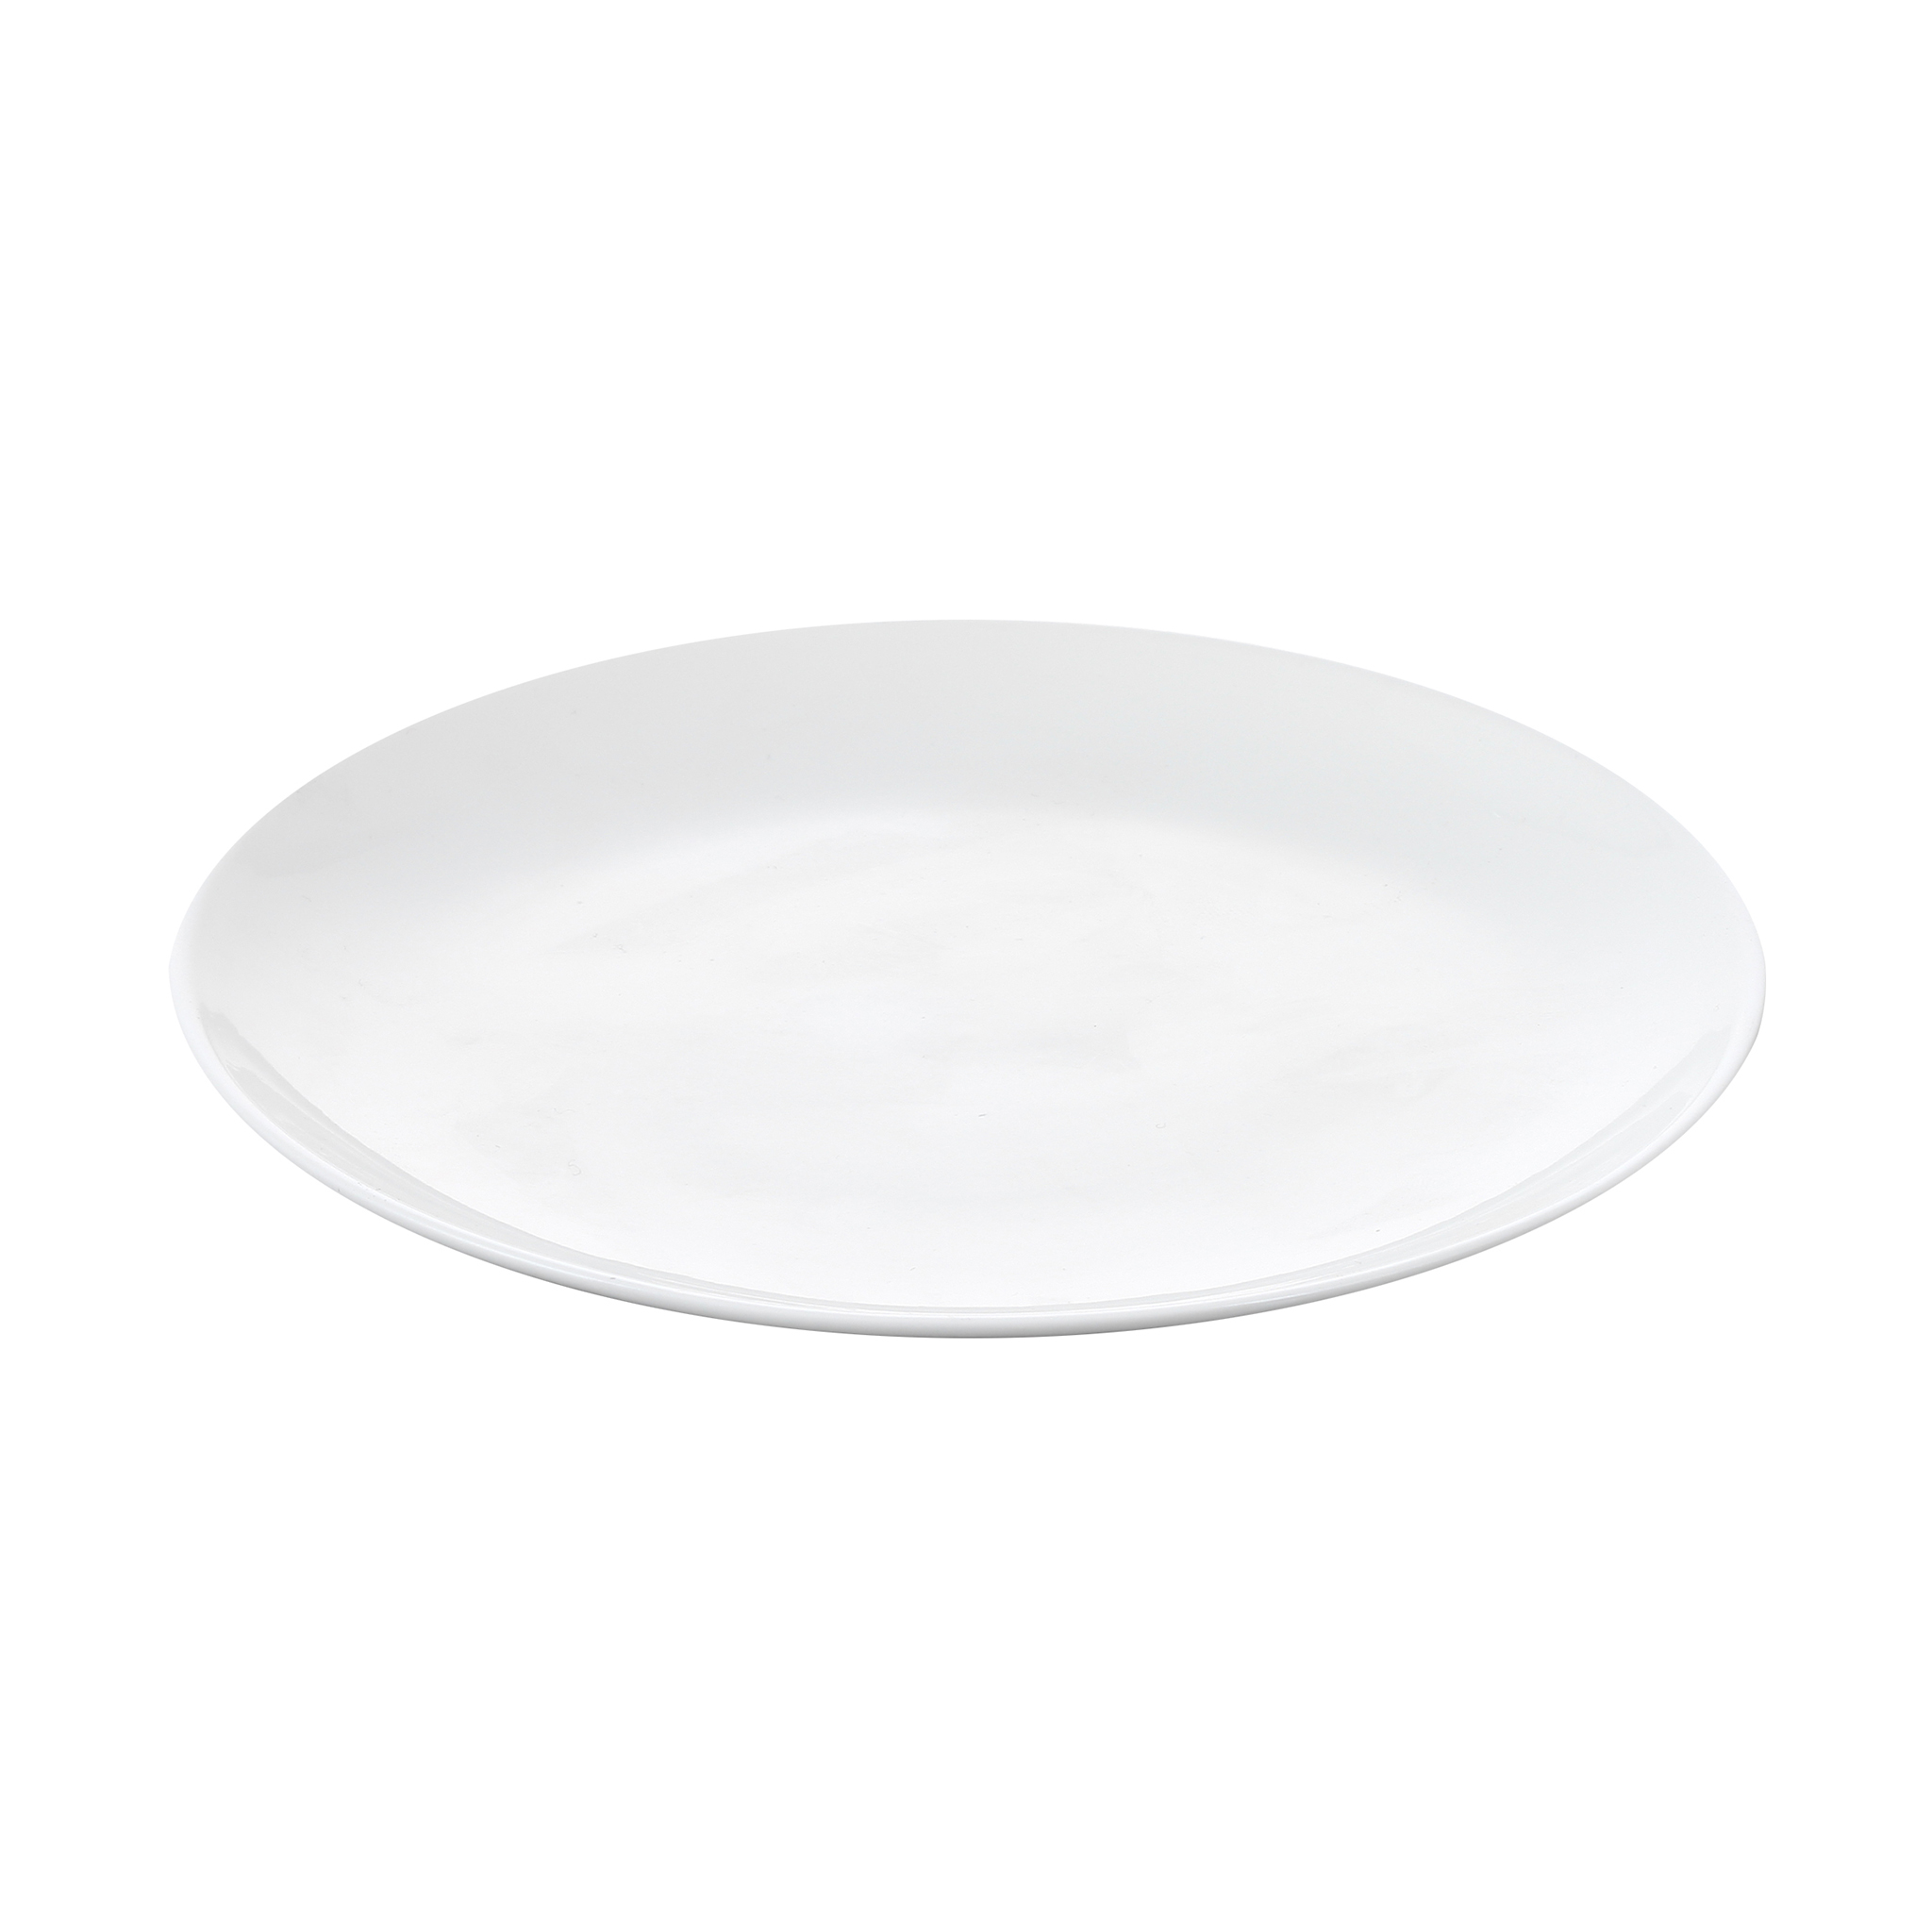 Тарелка обеденная Wilmax 25,5 см тарелка wilmax обеденная 25 5см фарфор